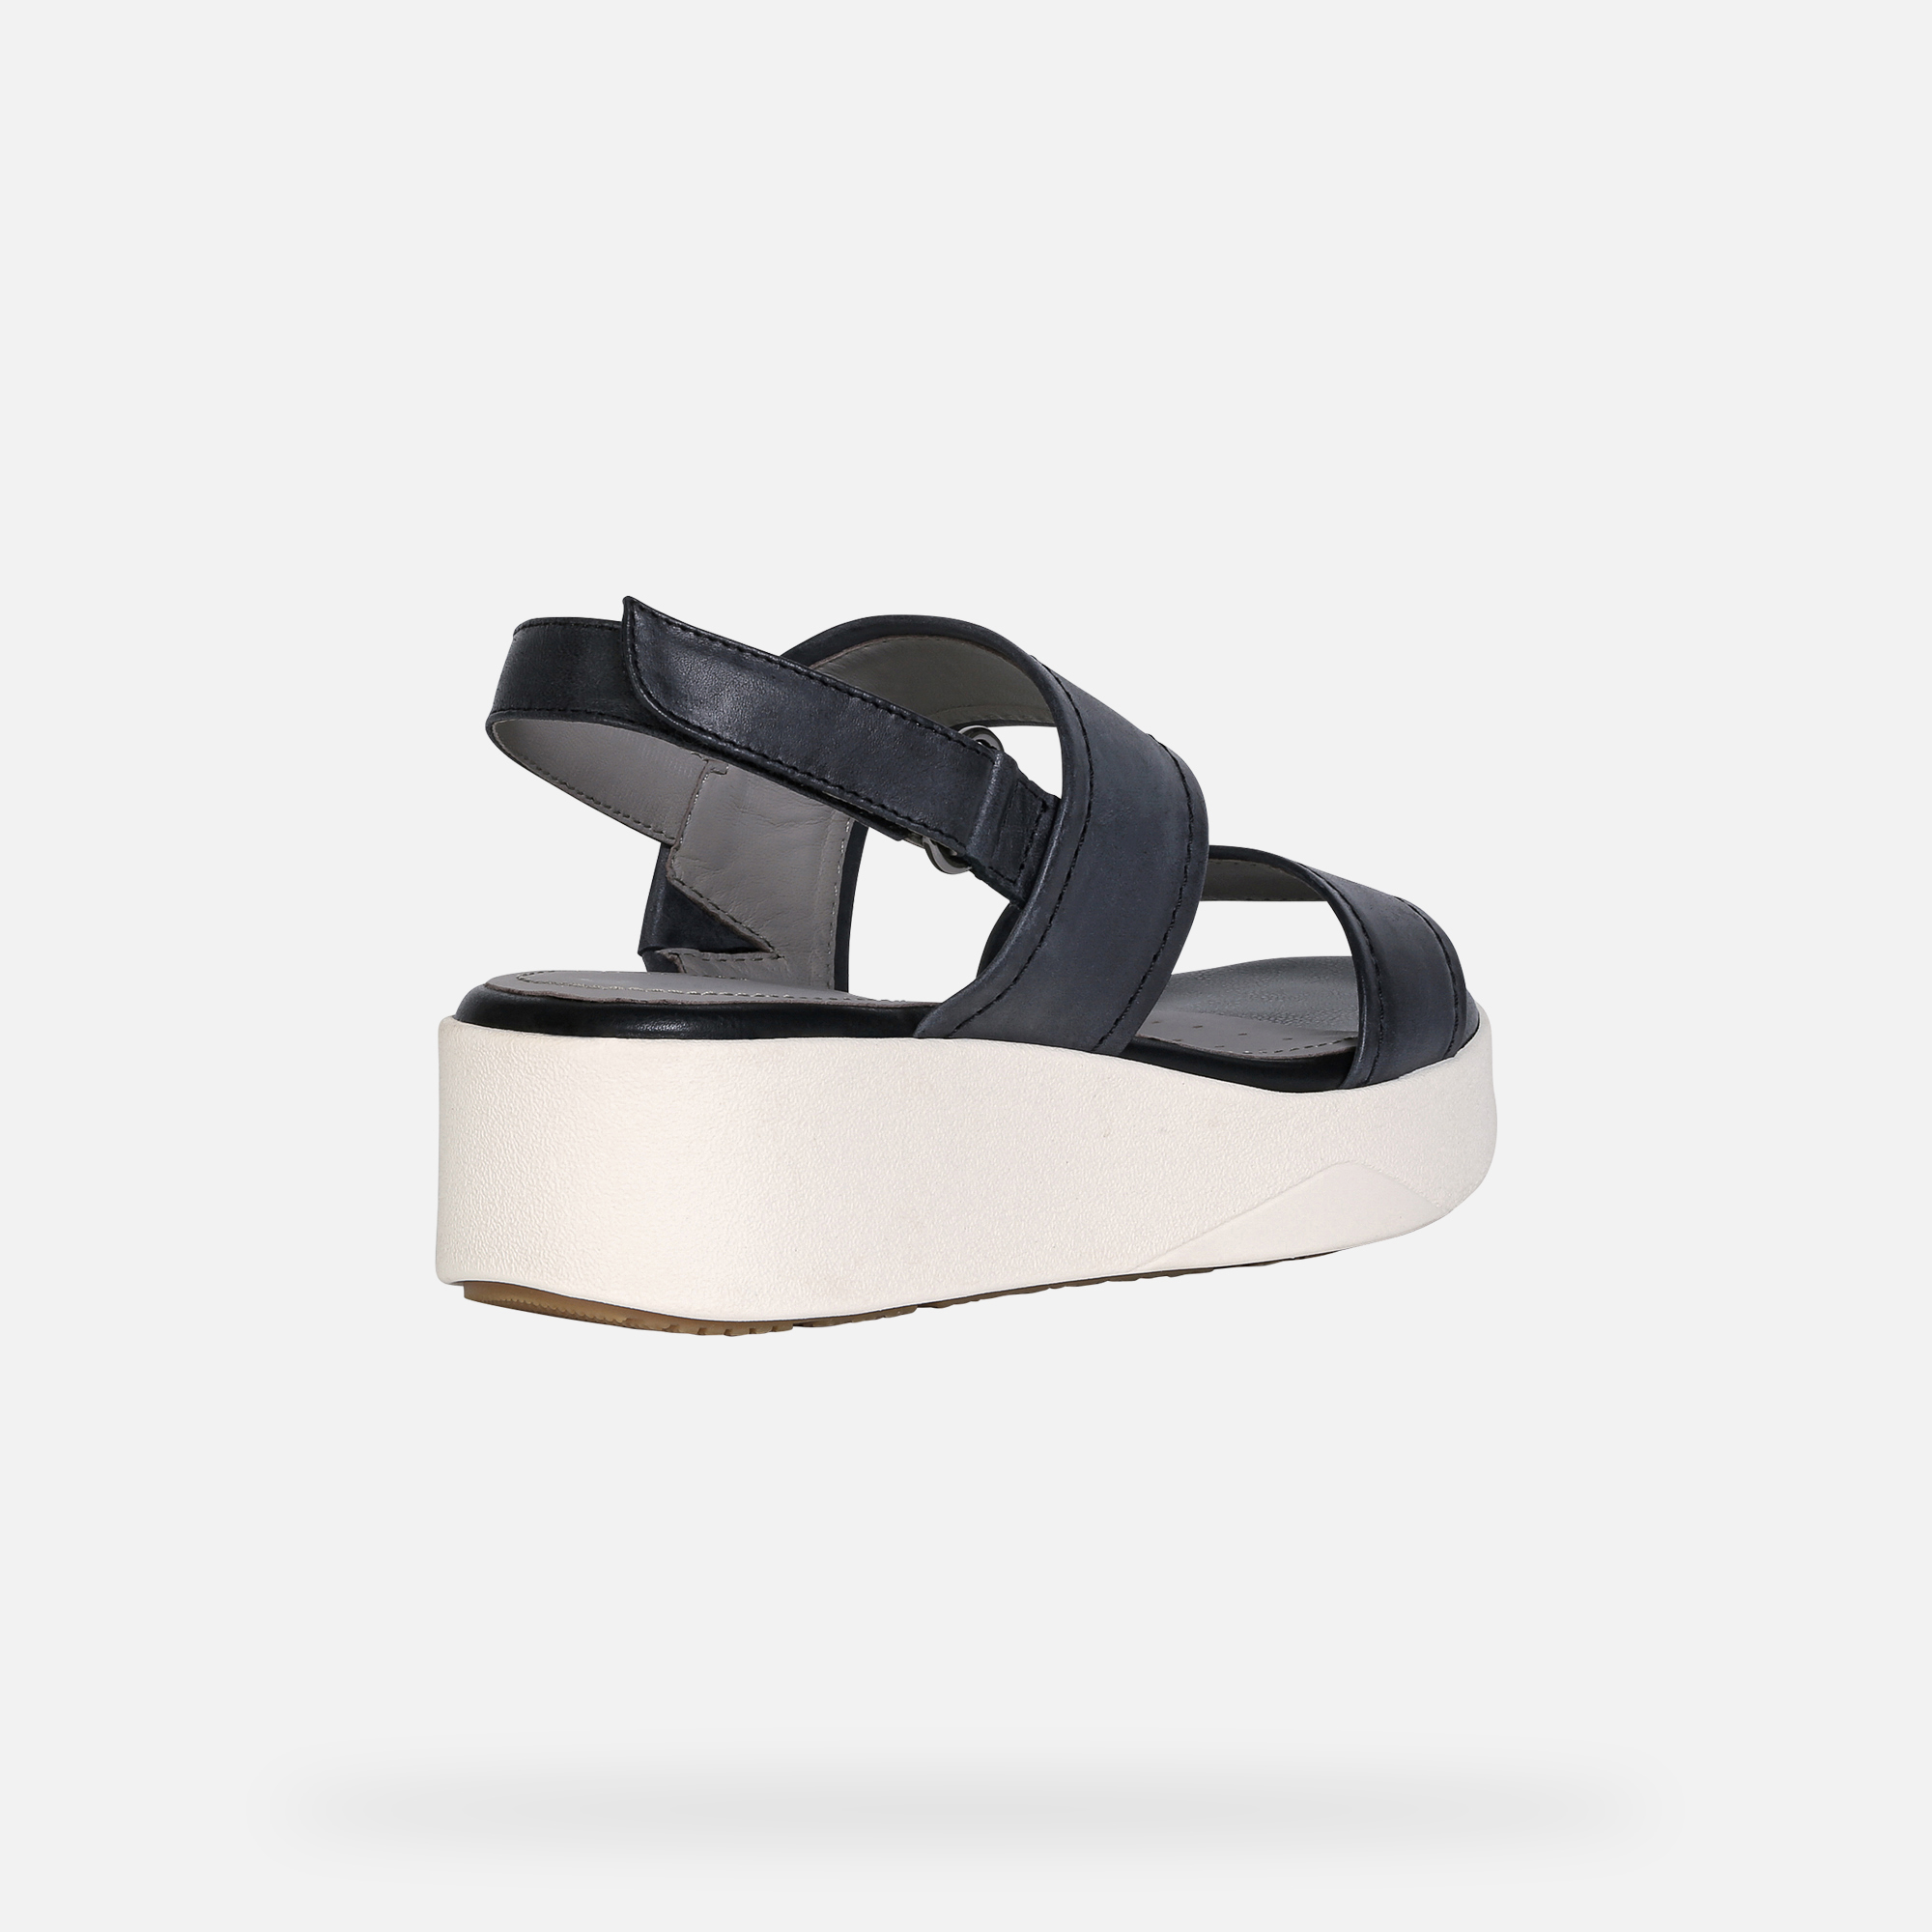 Geox® LAUDARA Woman Black Sandals | Geox® Spring Summer